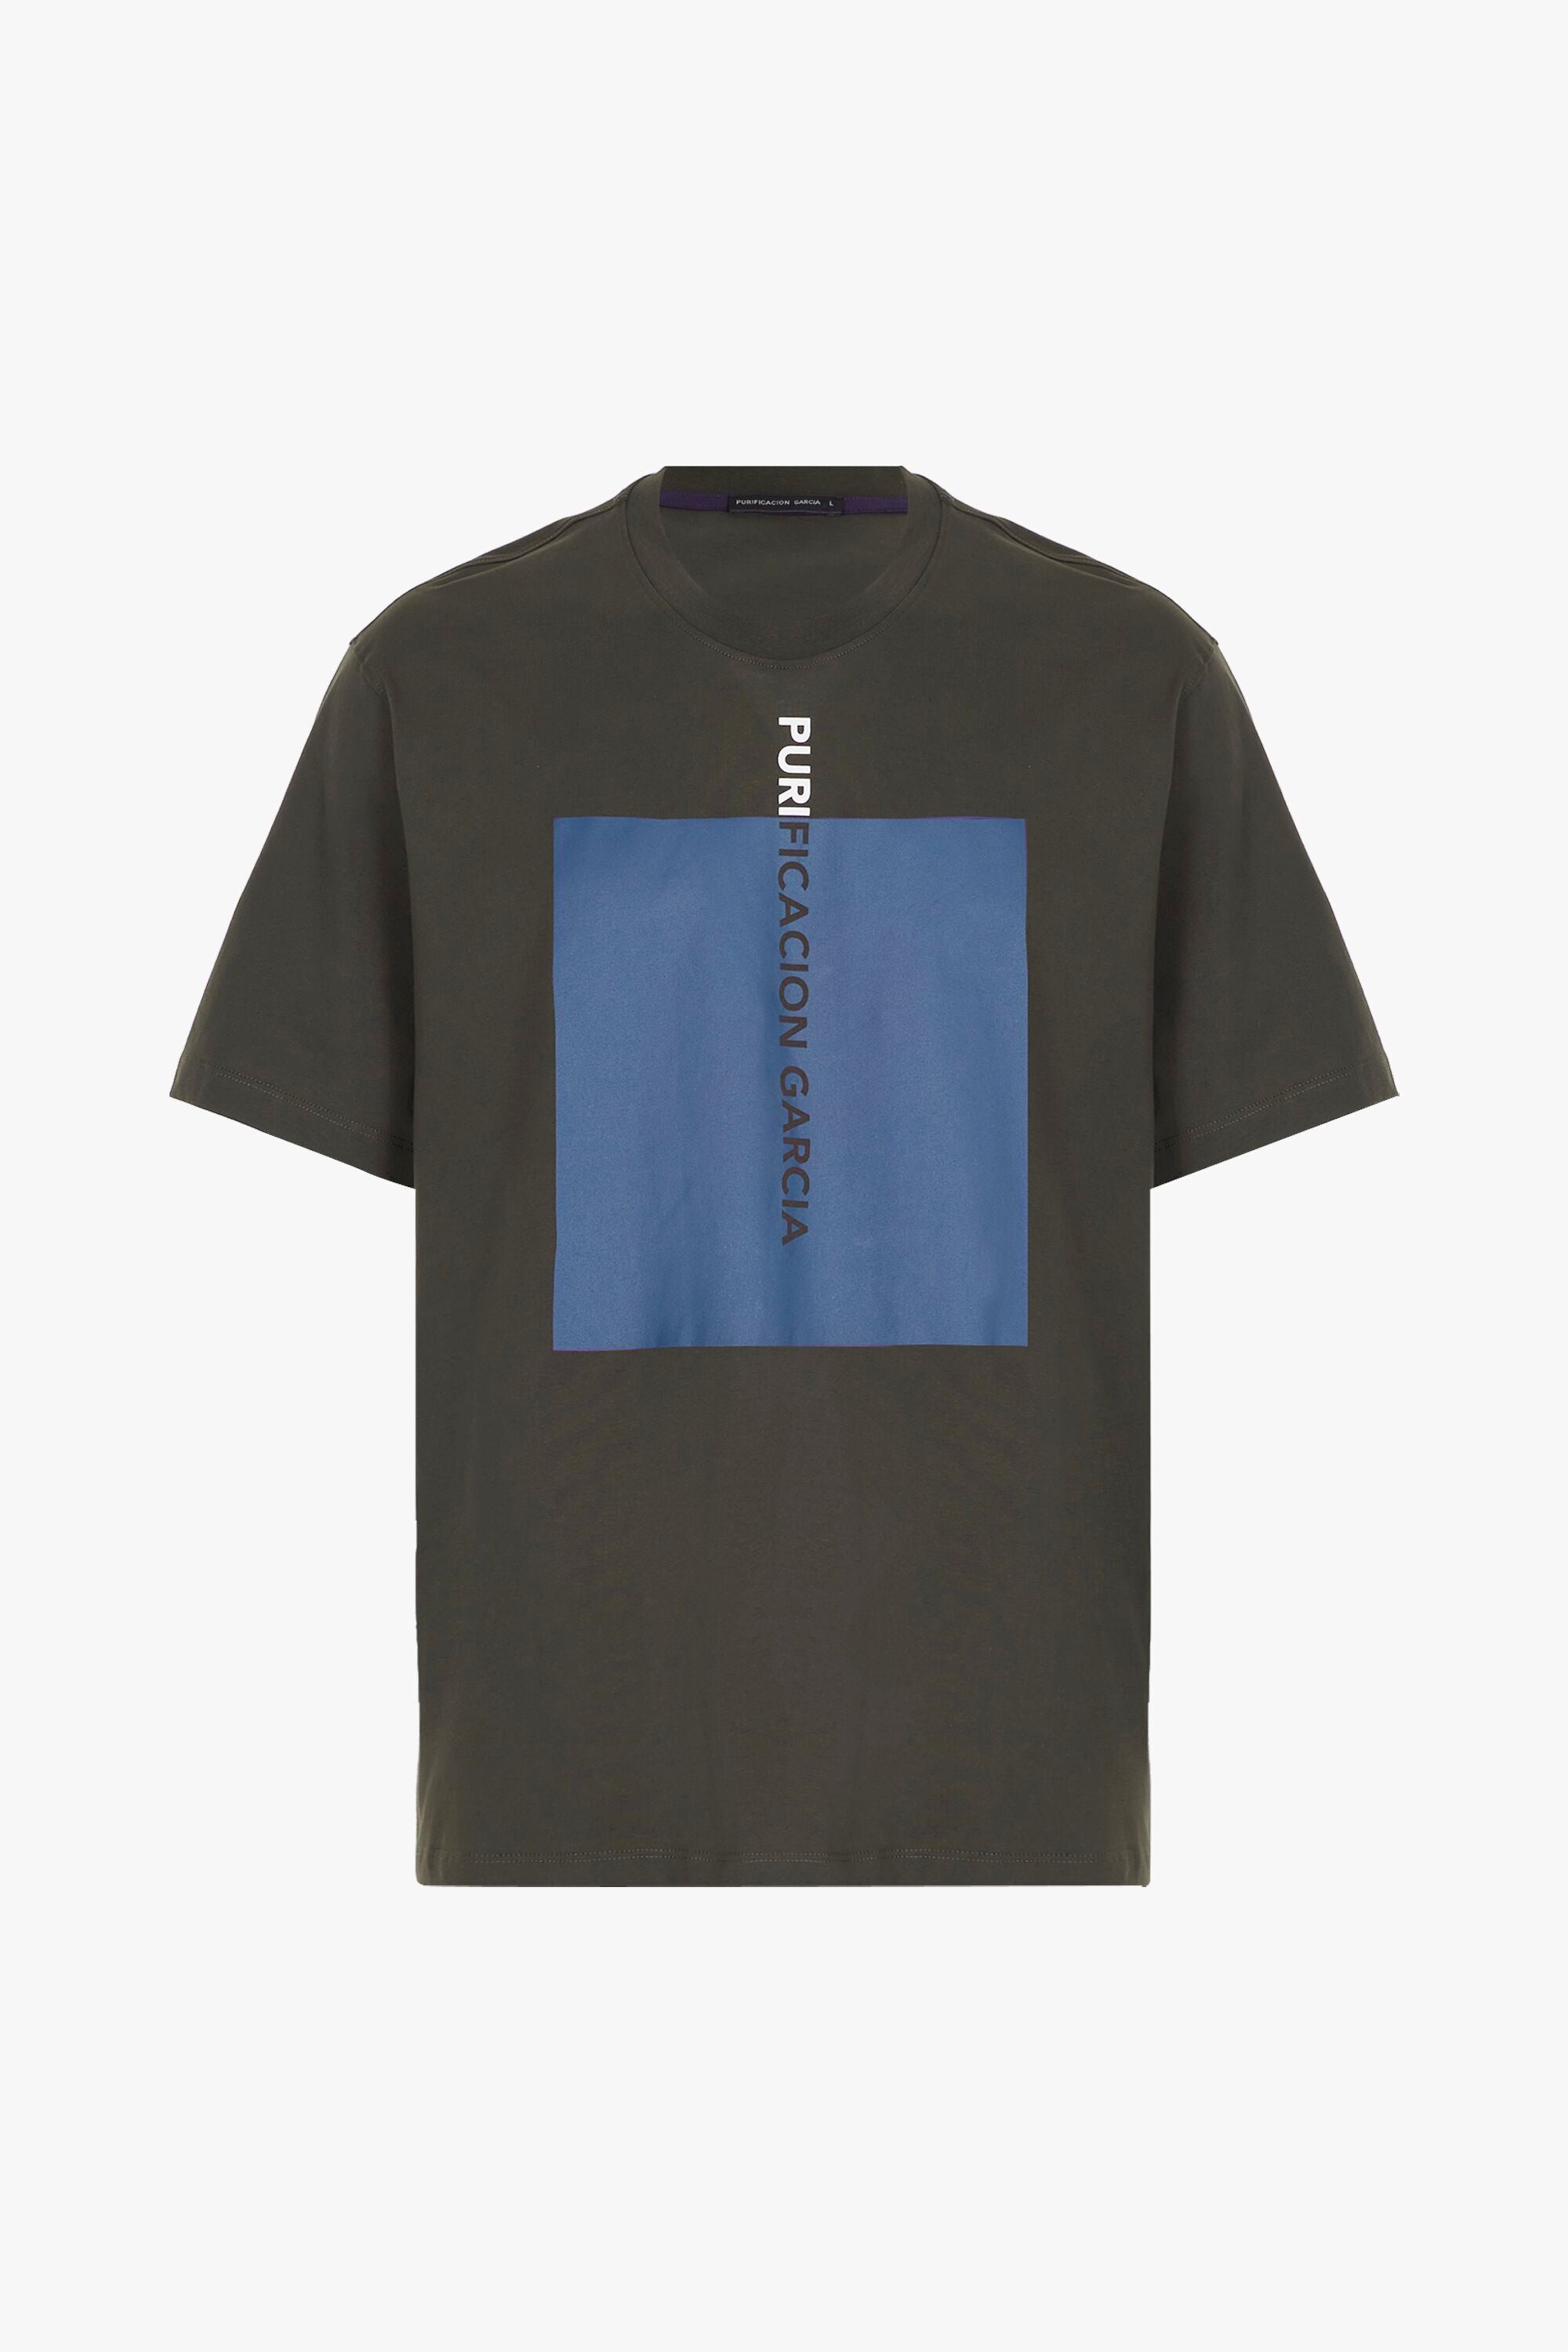 Denmark Garcia Cube - brown printed t-shirt Purificacion